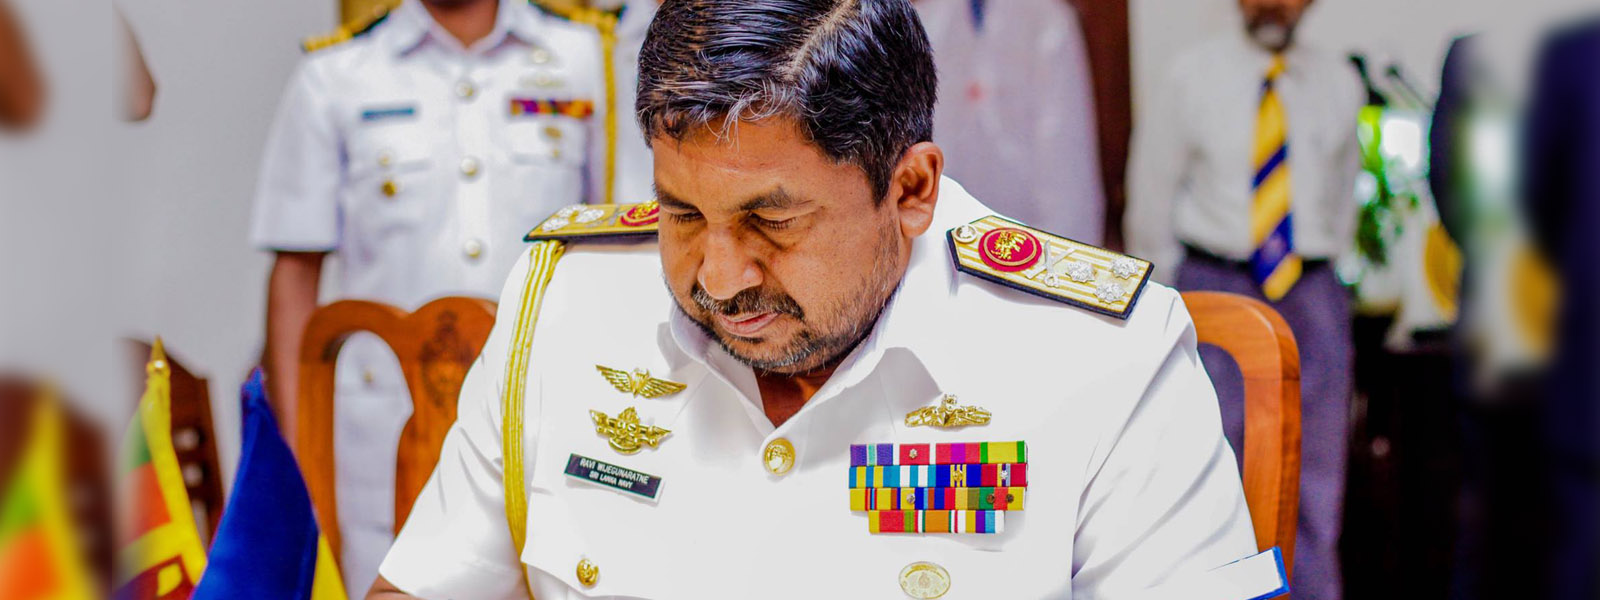 CDS Admiral Ravindra Wijegunaratne retires